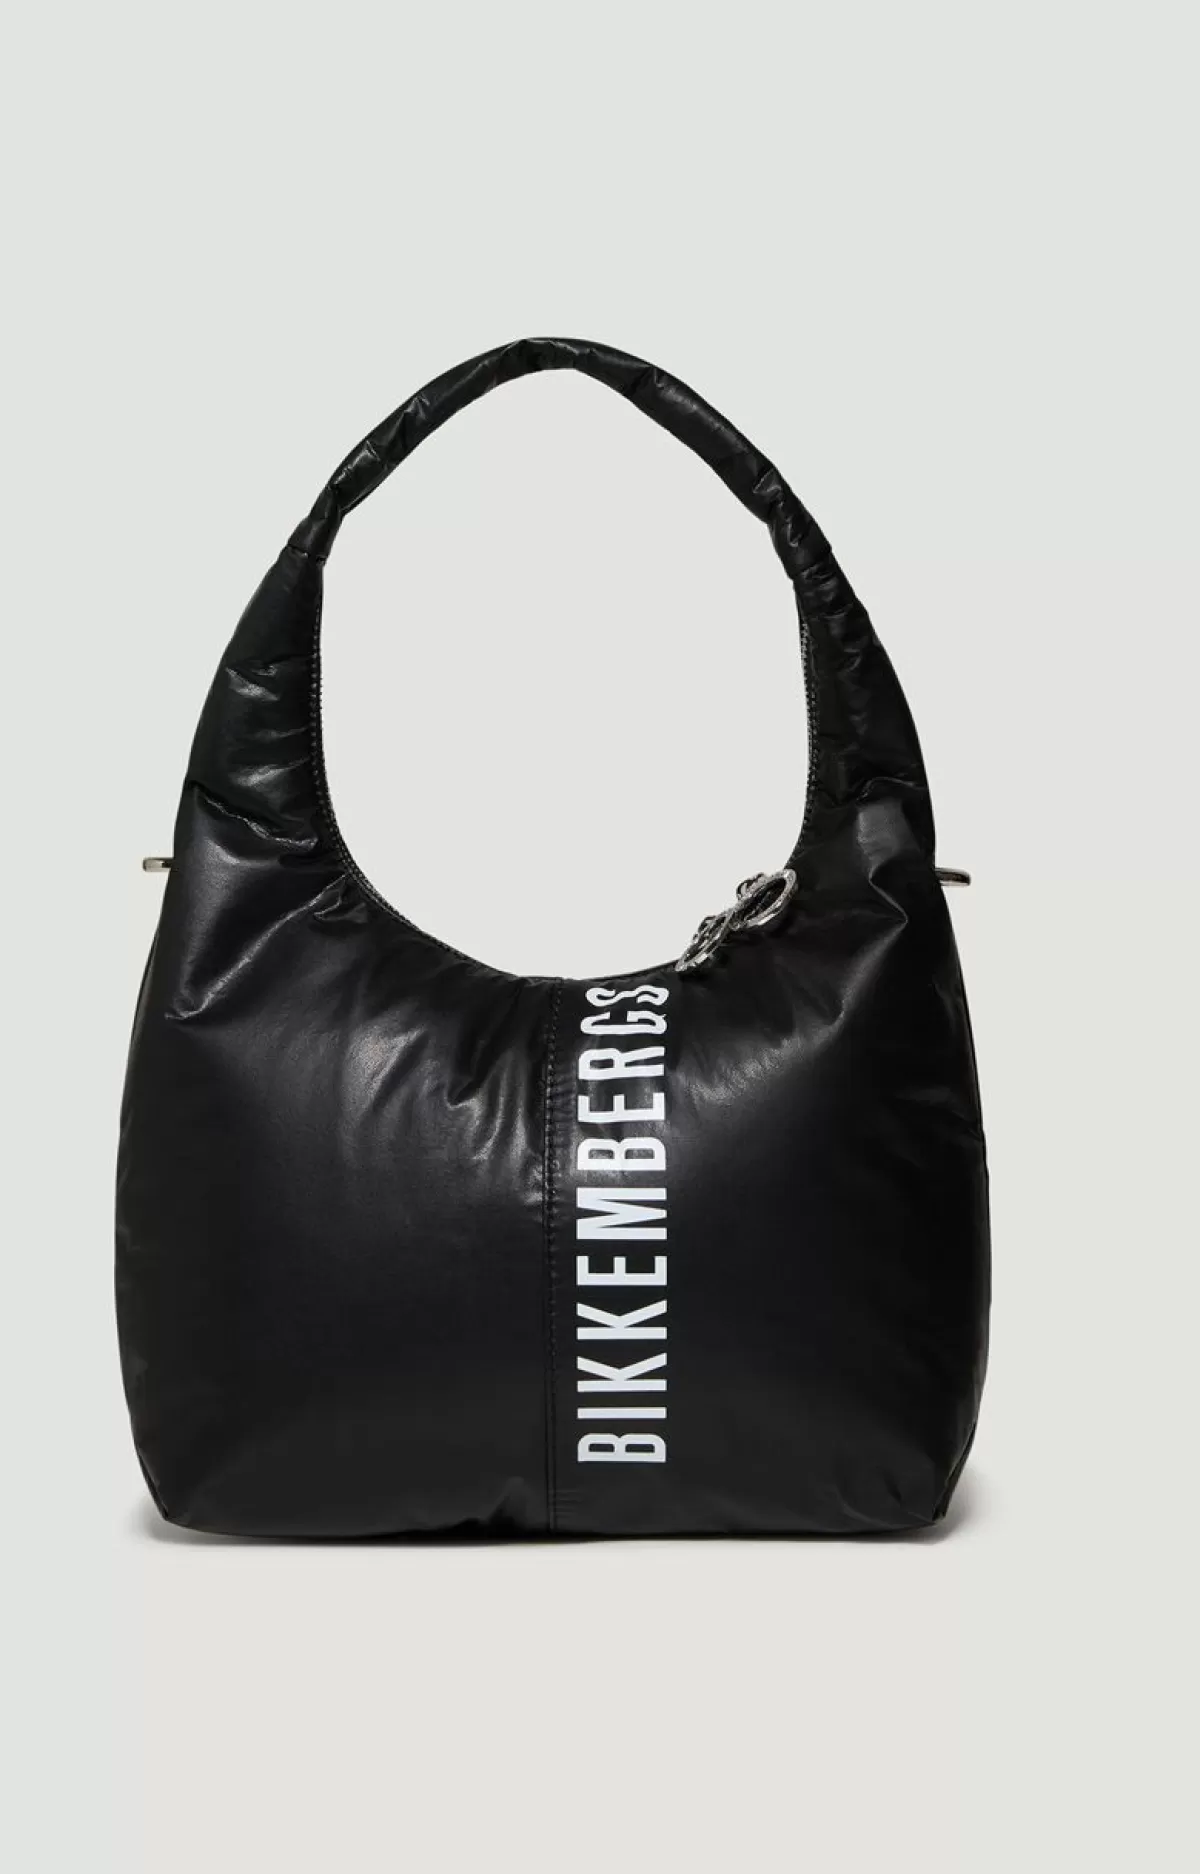 Bikkembergs Women'S Bag - Bkk Star Medium Black Hot